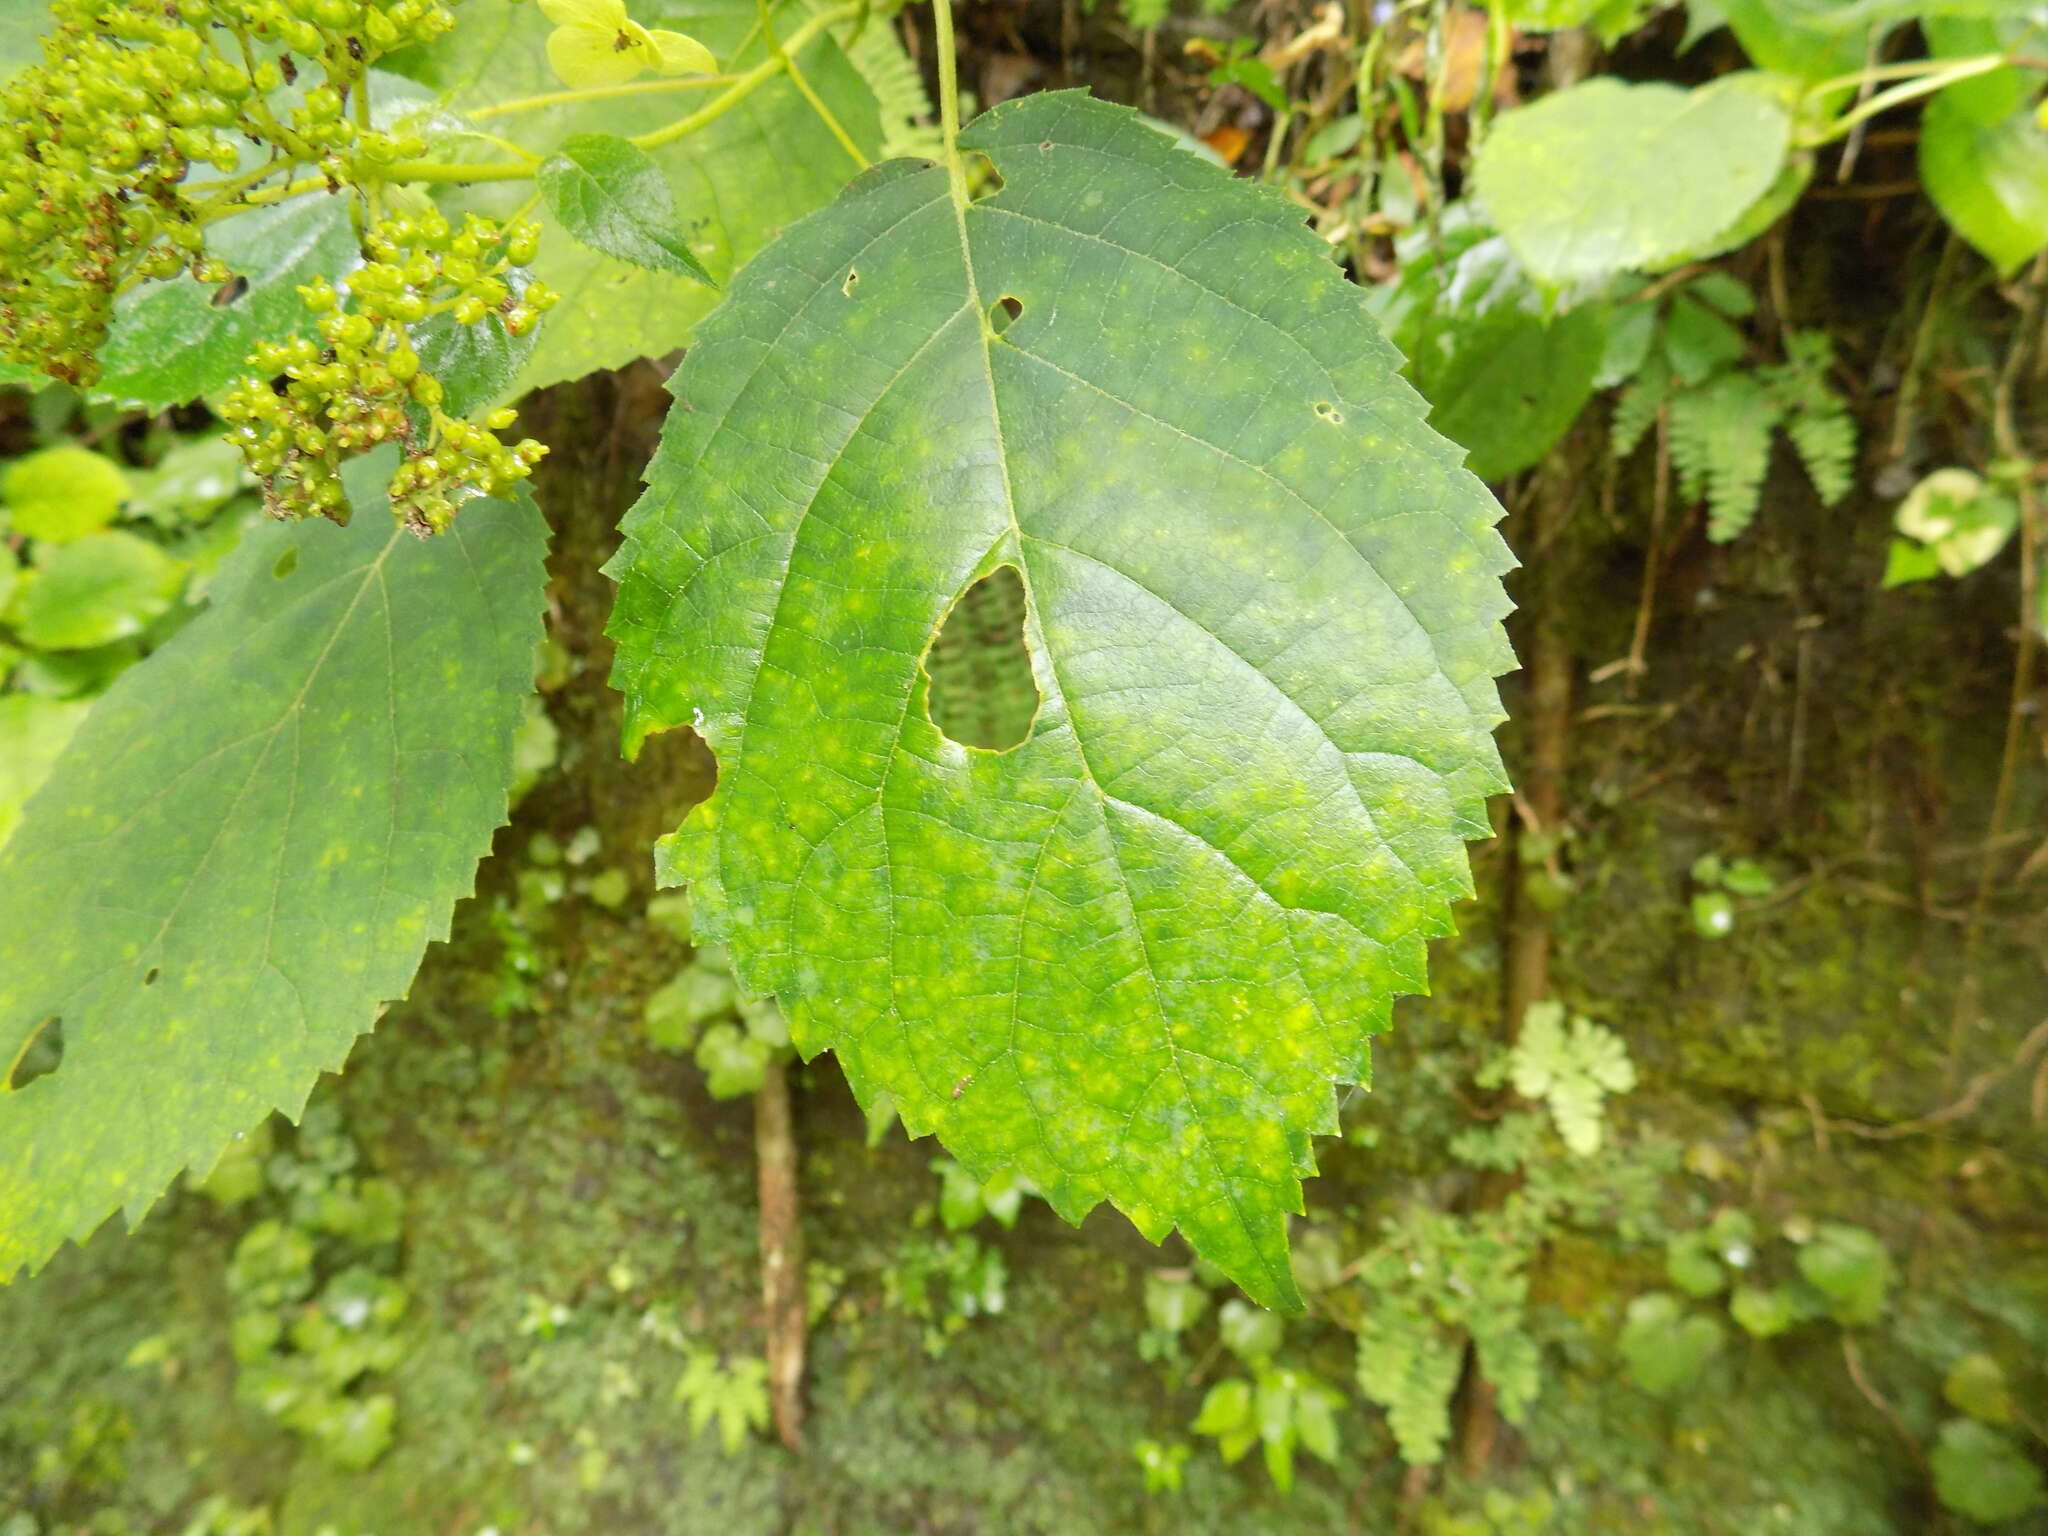 Image of wild hydrangea